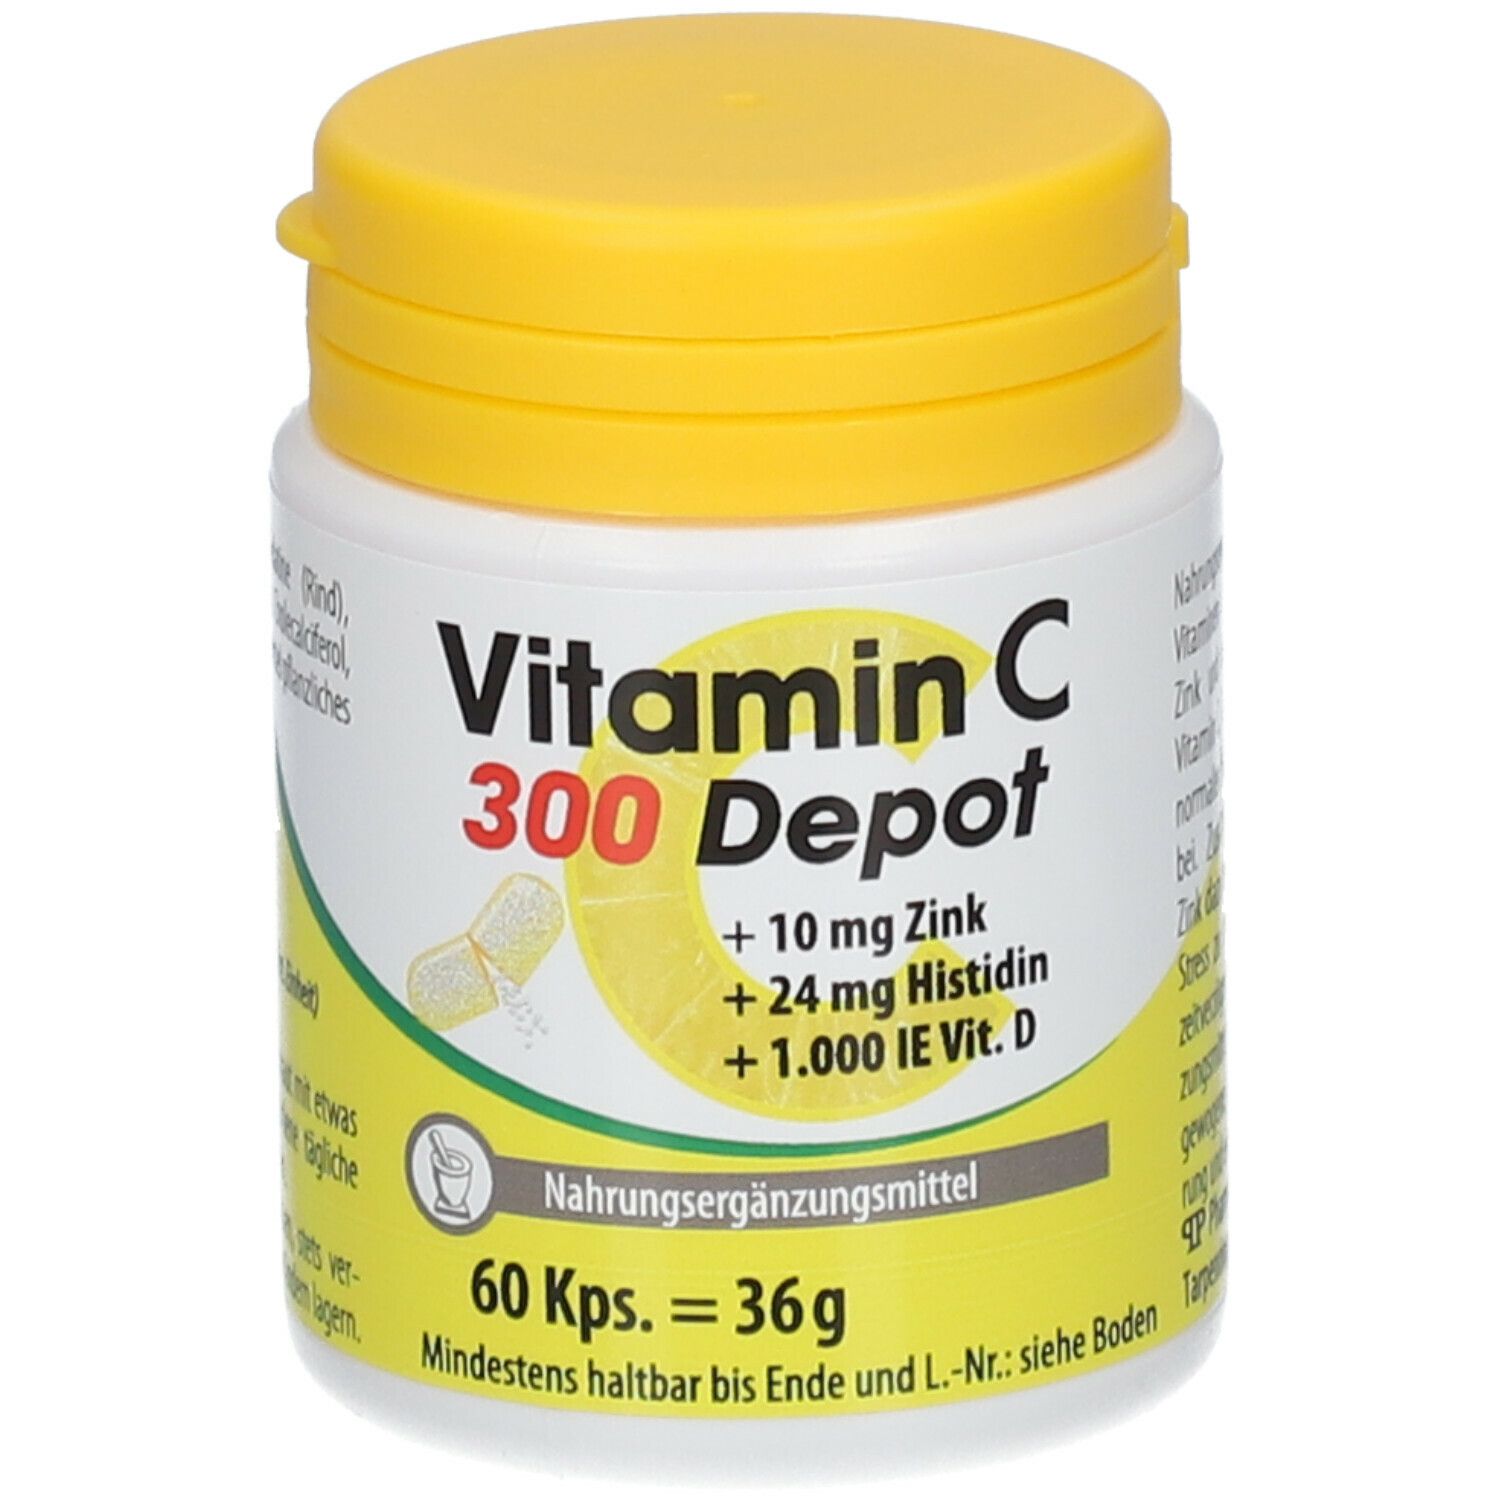 VITAMIN C 300 Depot + Zink + Histidin + Vitamin D Kapseln